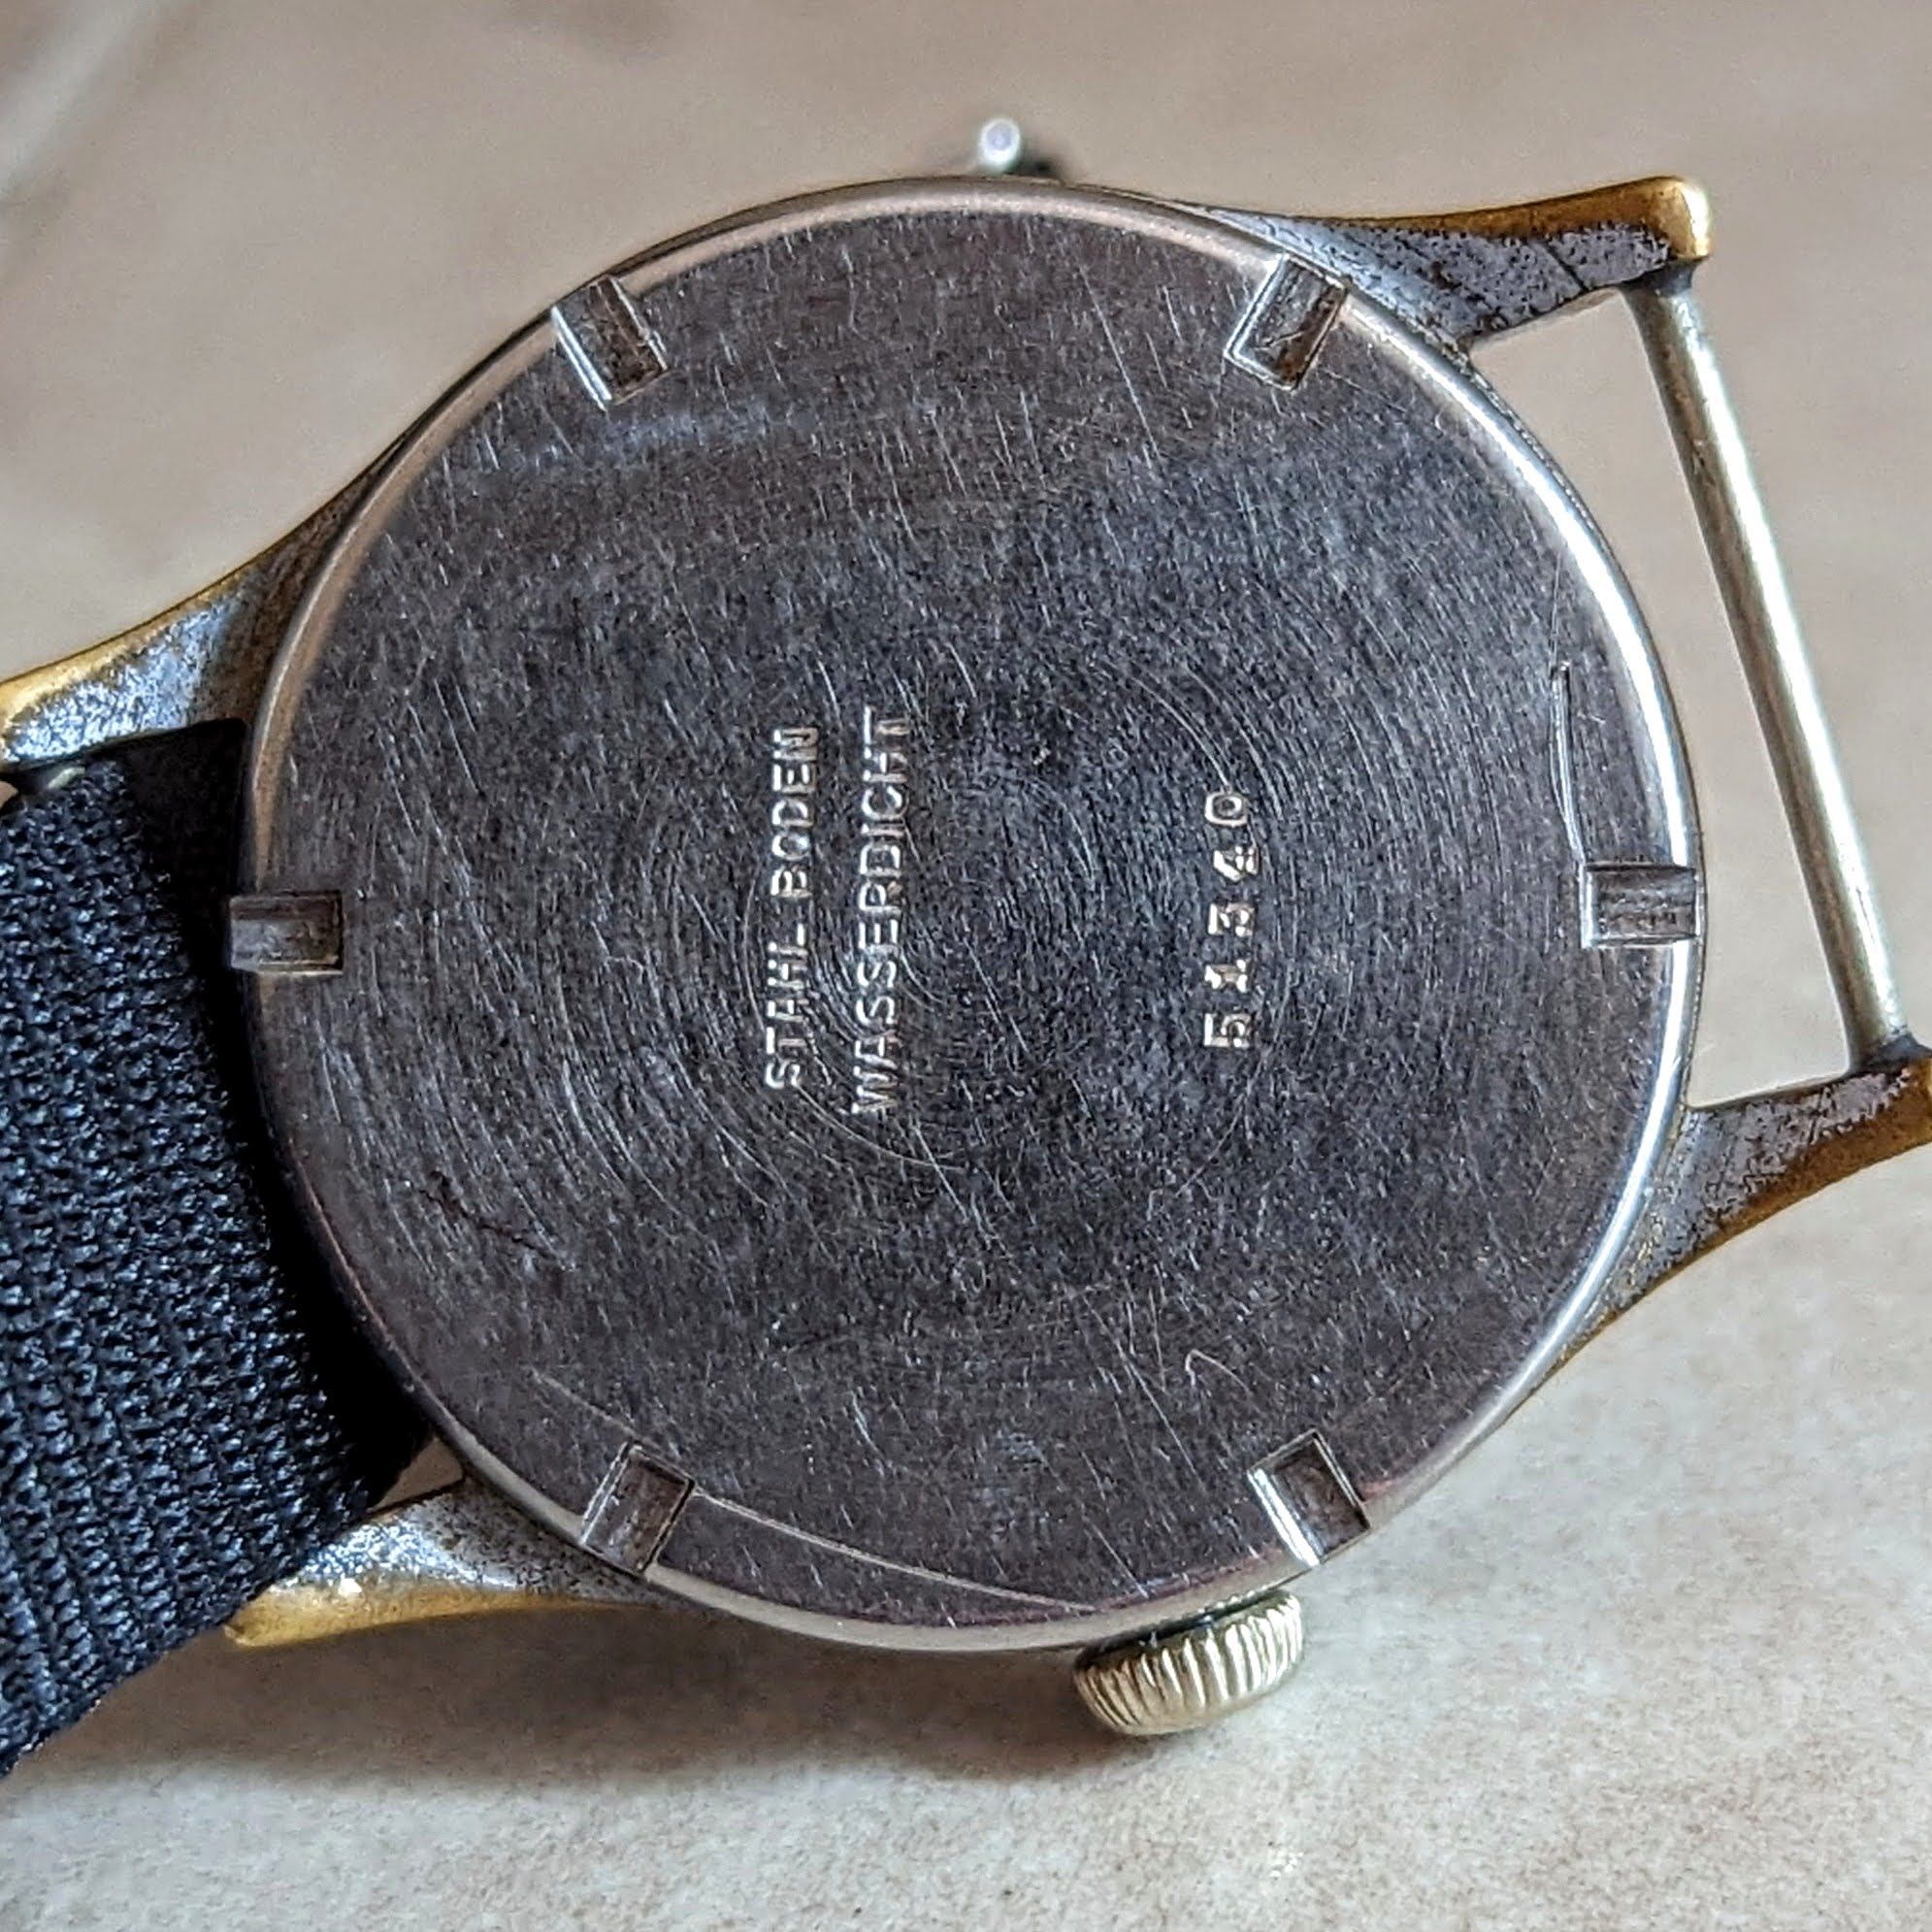 Vintage Rare SYNTAKT Wrist Watch BODEN EDELSTAHL 1930s | eBay